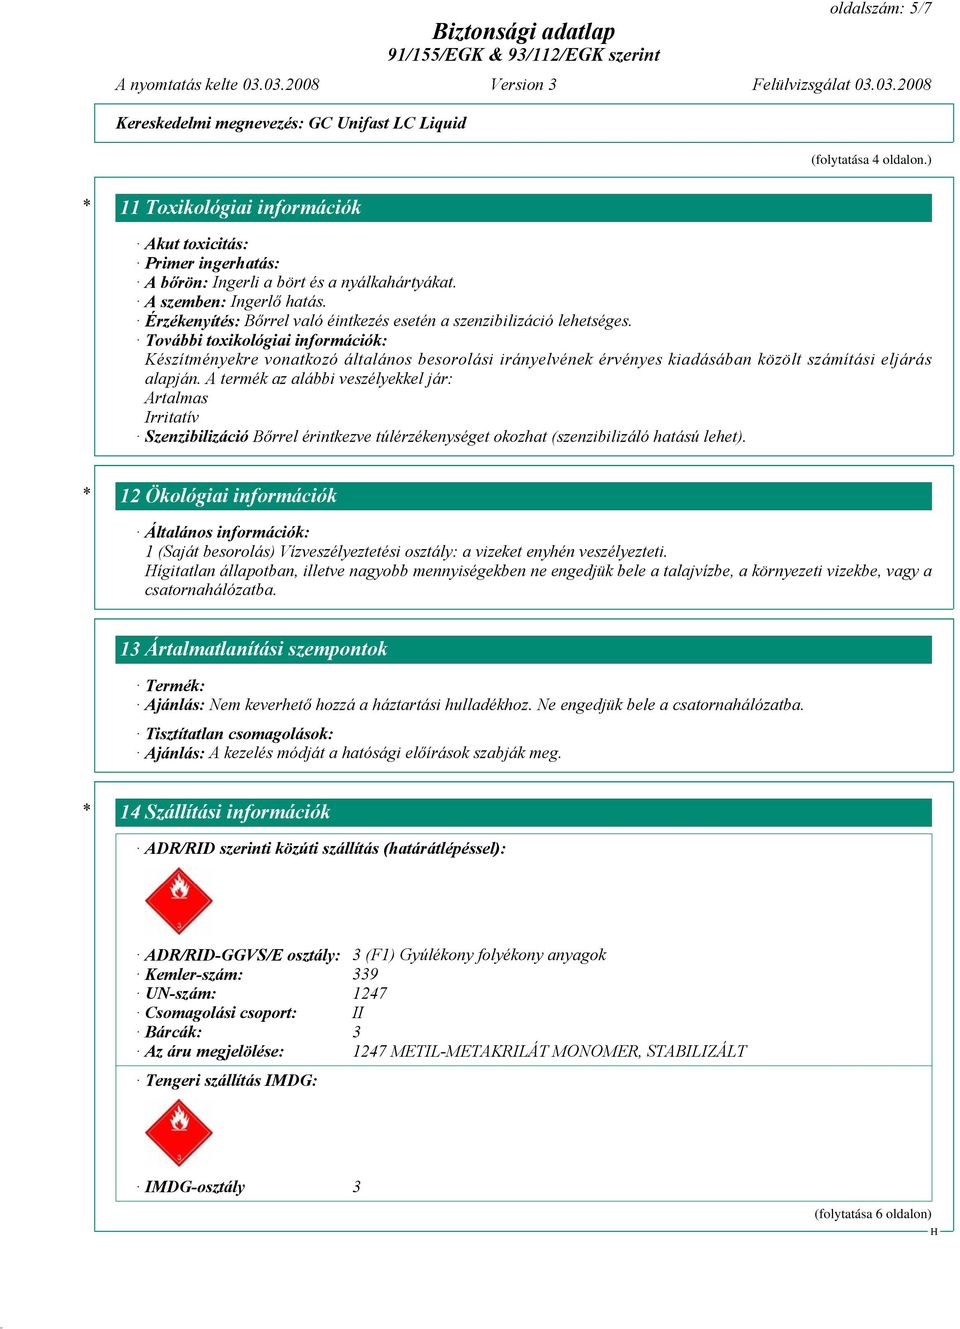 További toxikológiai információk: Készítményekre vonatkozó általános besorolási irányelvének érvényes kiadásában közölt számítási eljárás alapján.